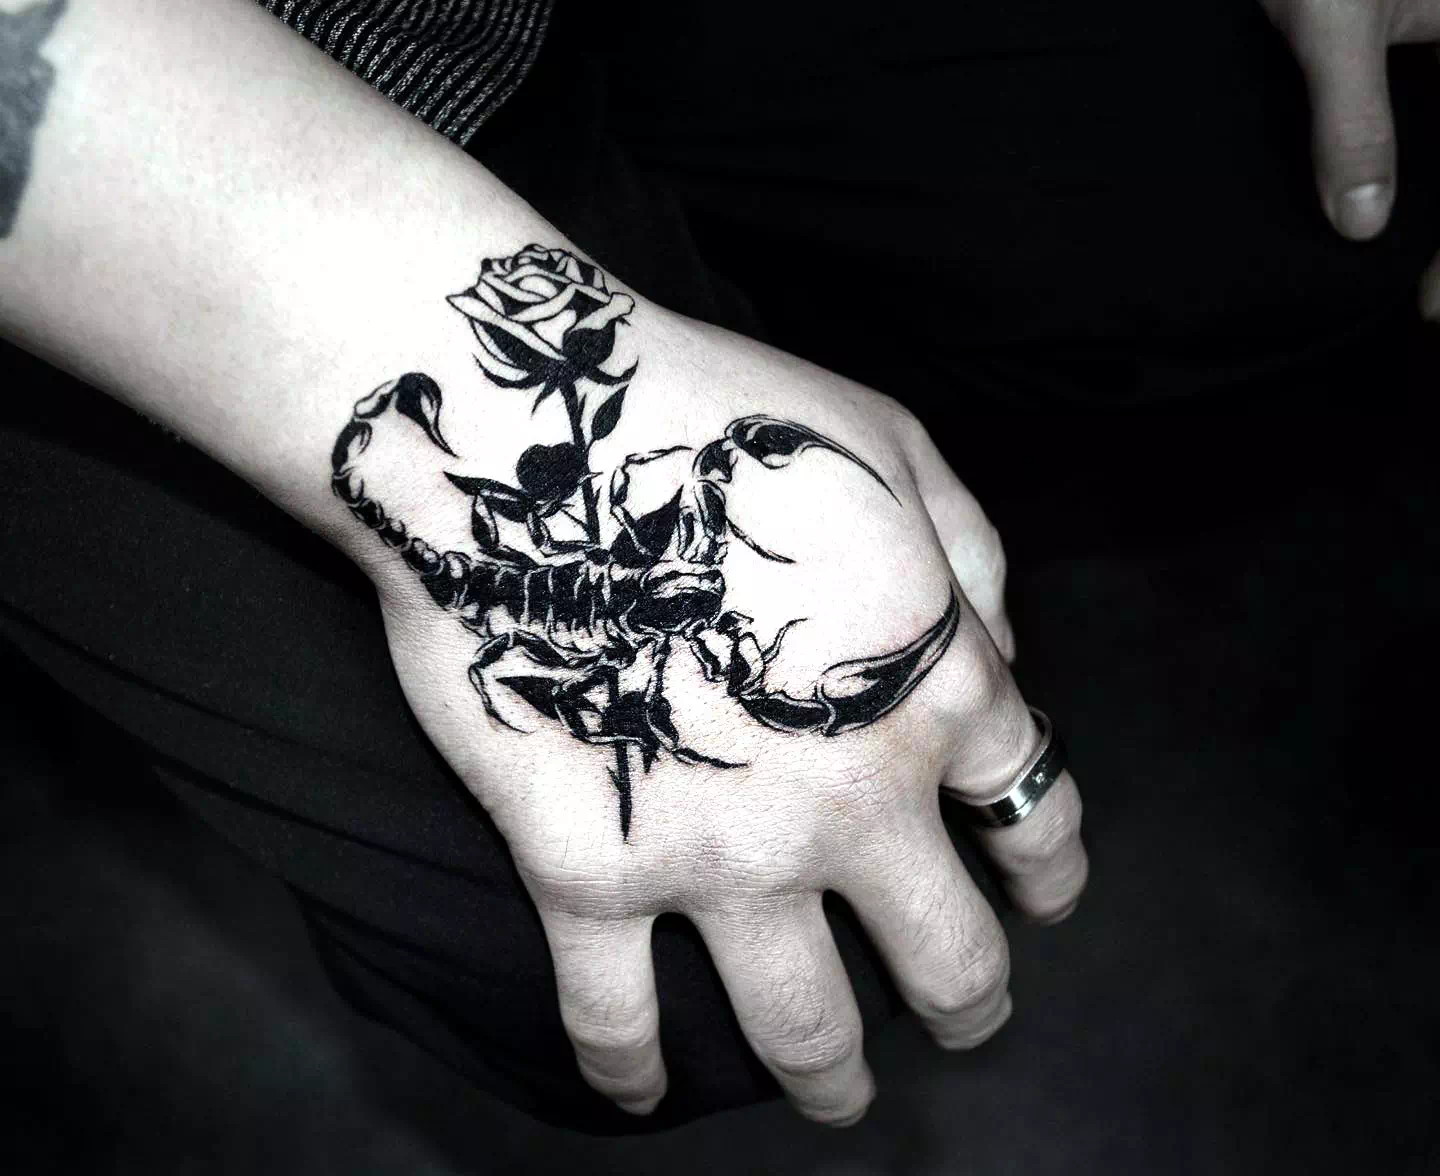 Tatuajes femeninos de Escorpio con estampado de rosas 2